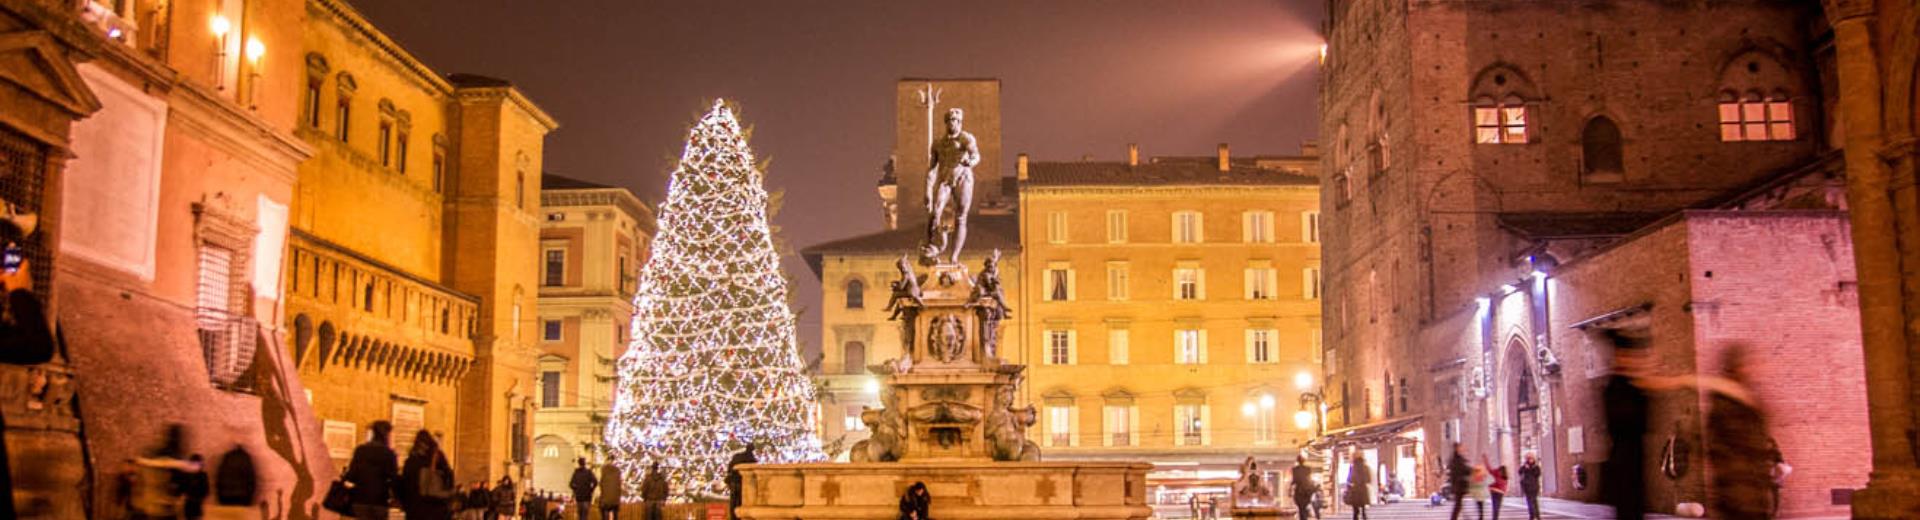 Bw Plus Tower Bologna - Offerta Natale e Capodanno a Bologna